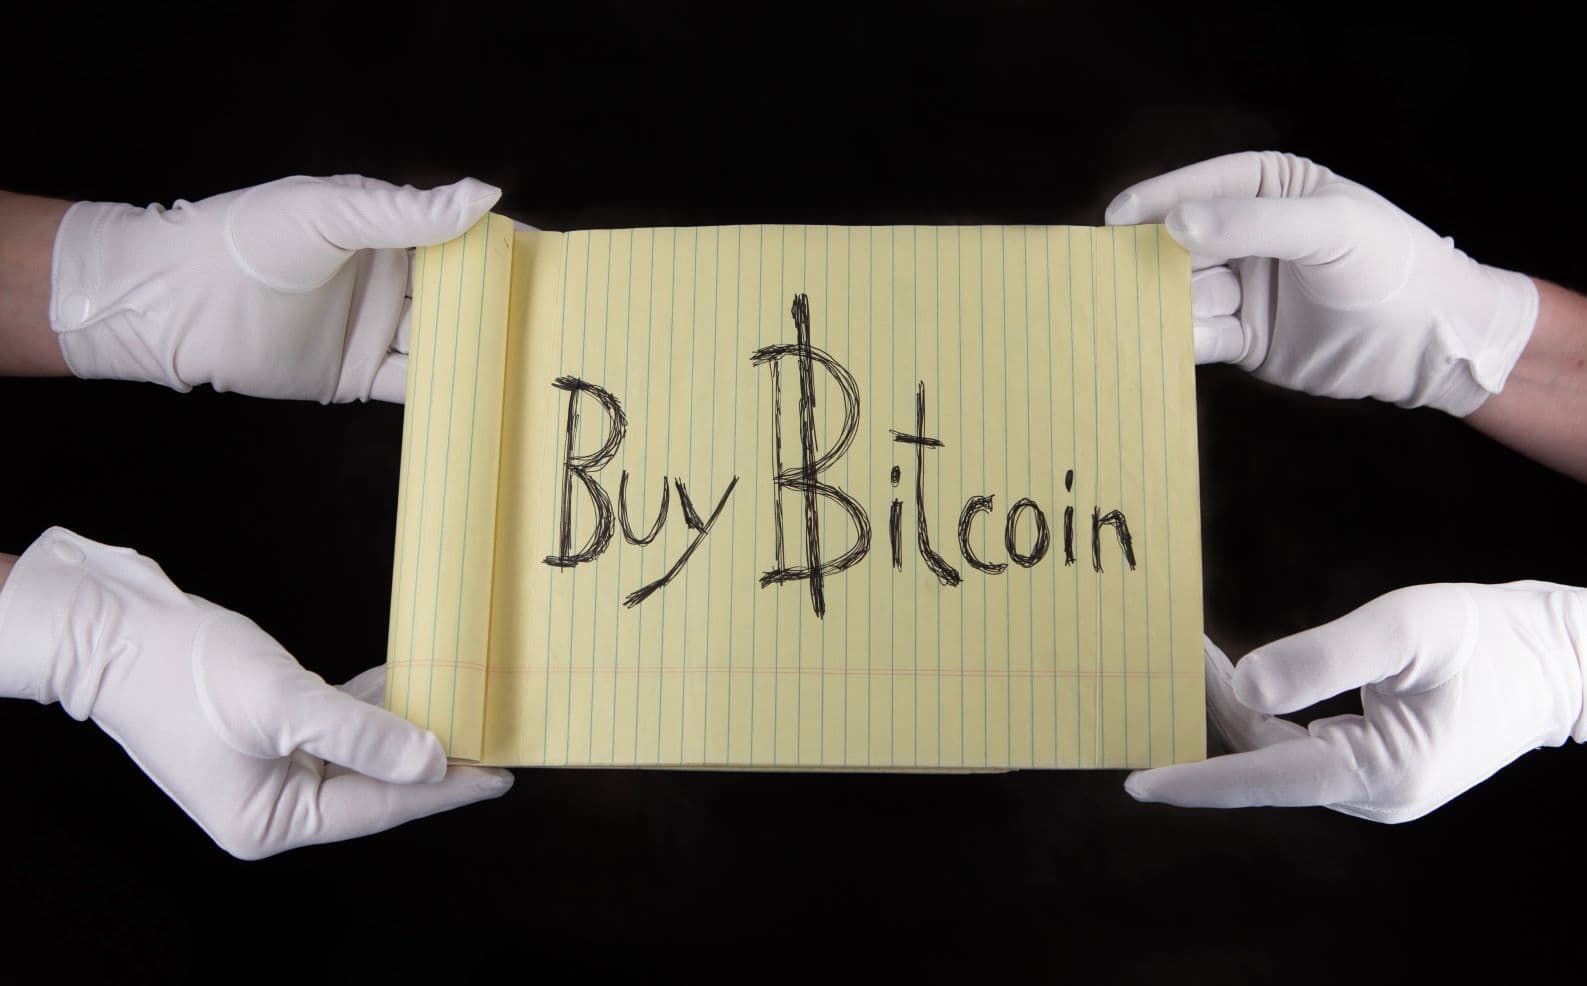 Compre Bitcoin